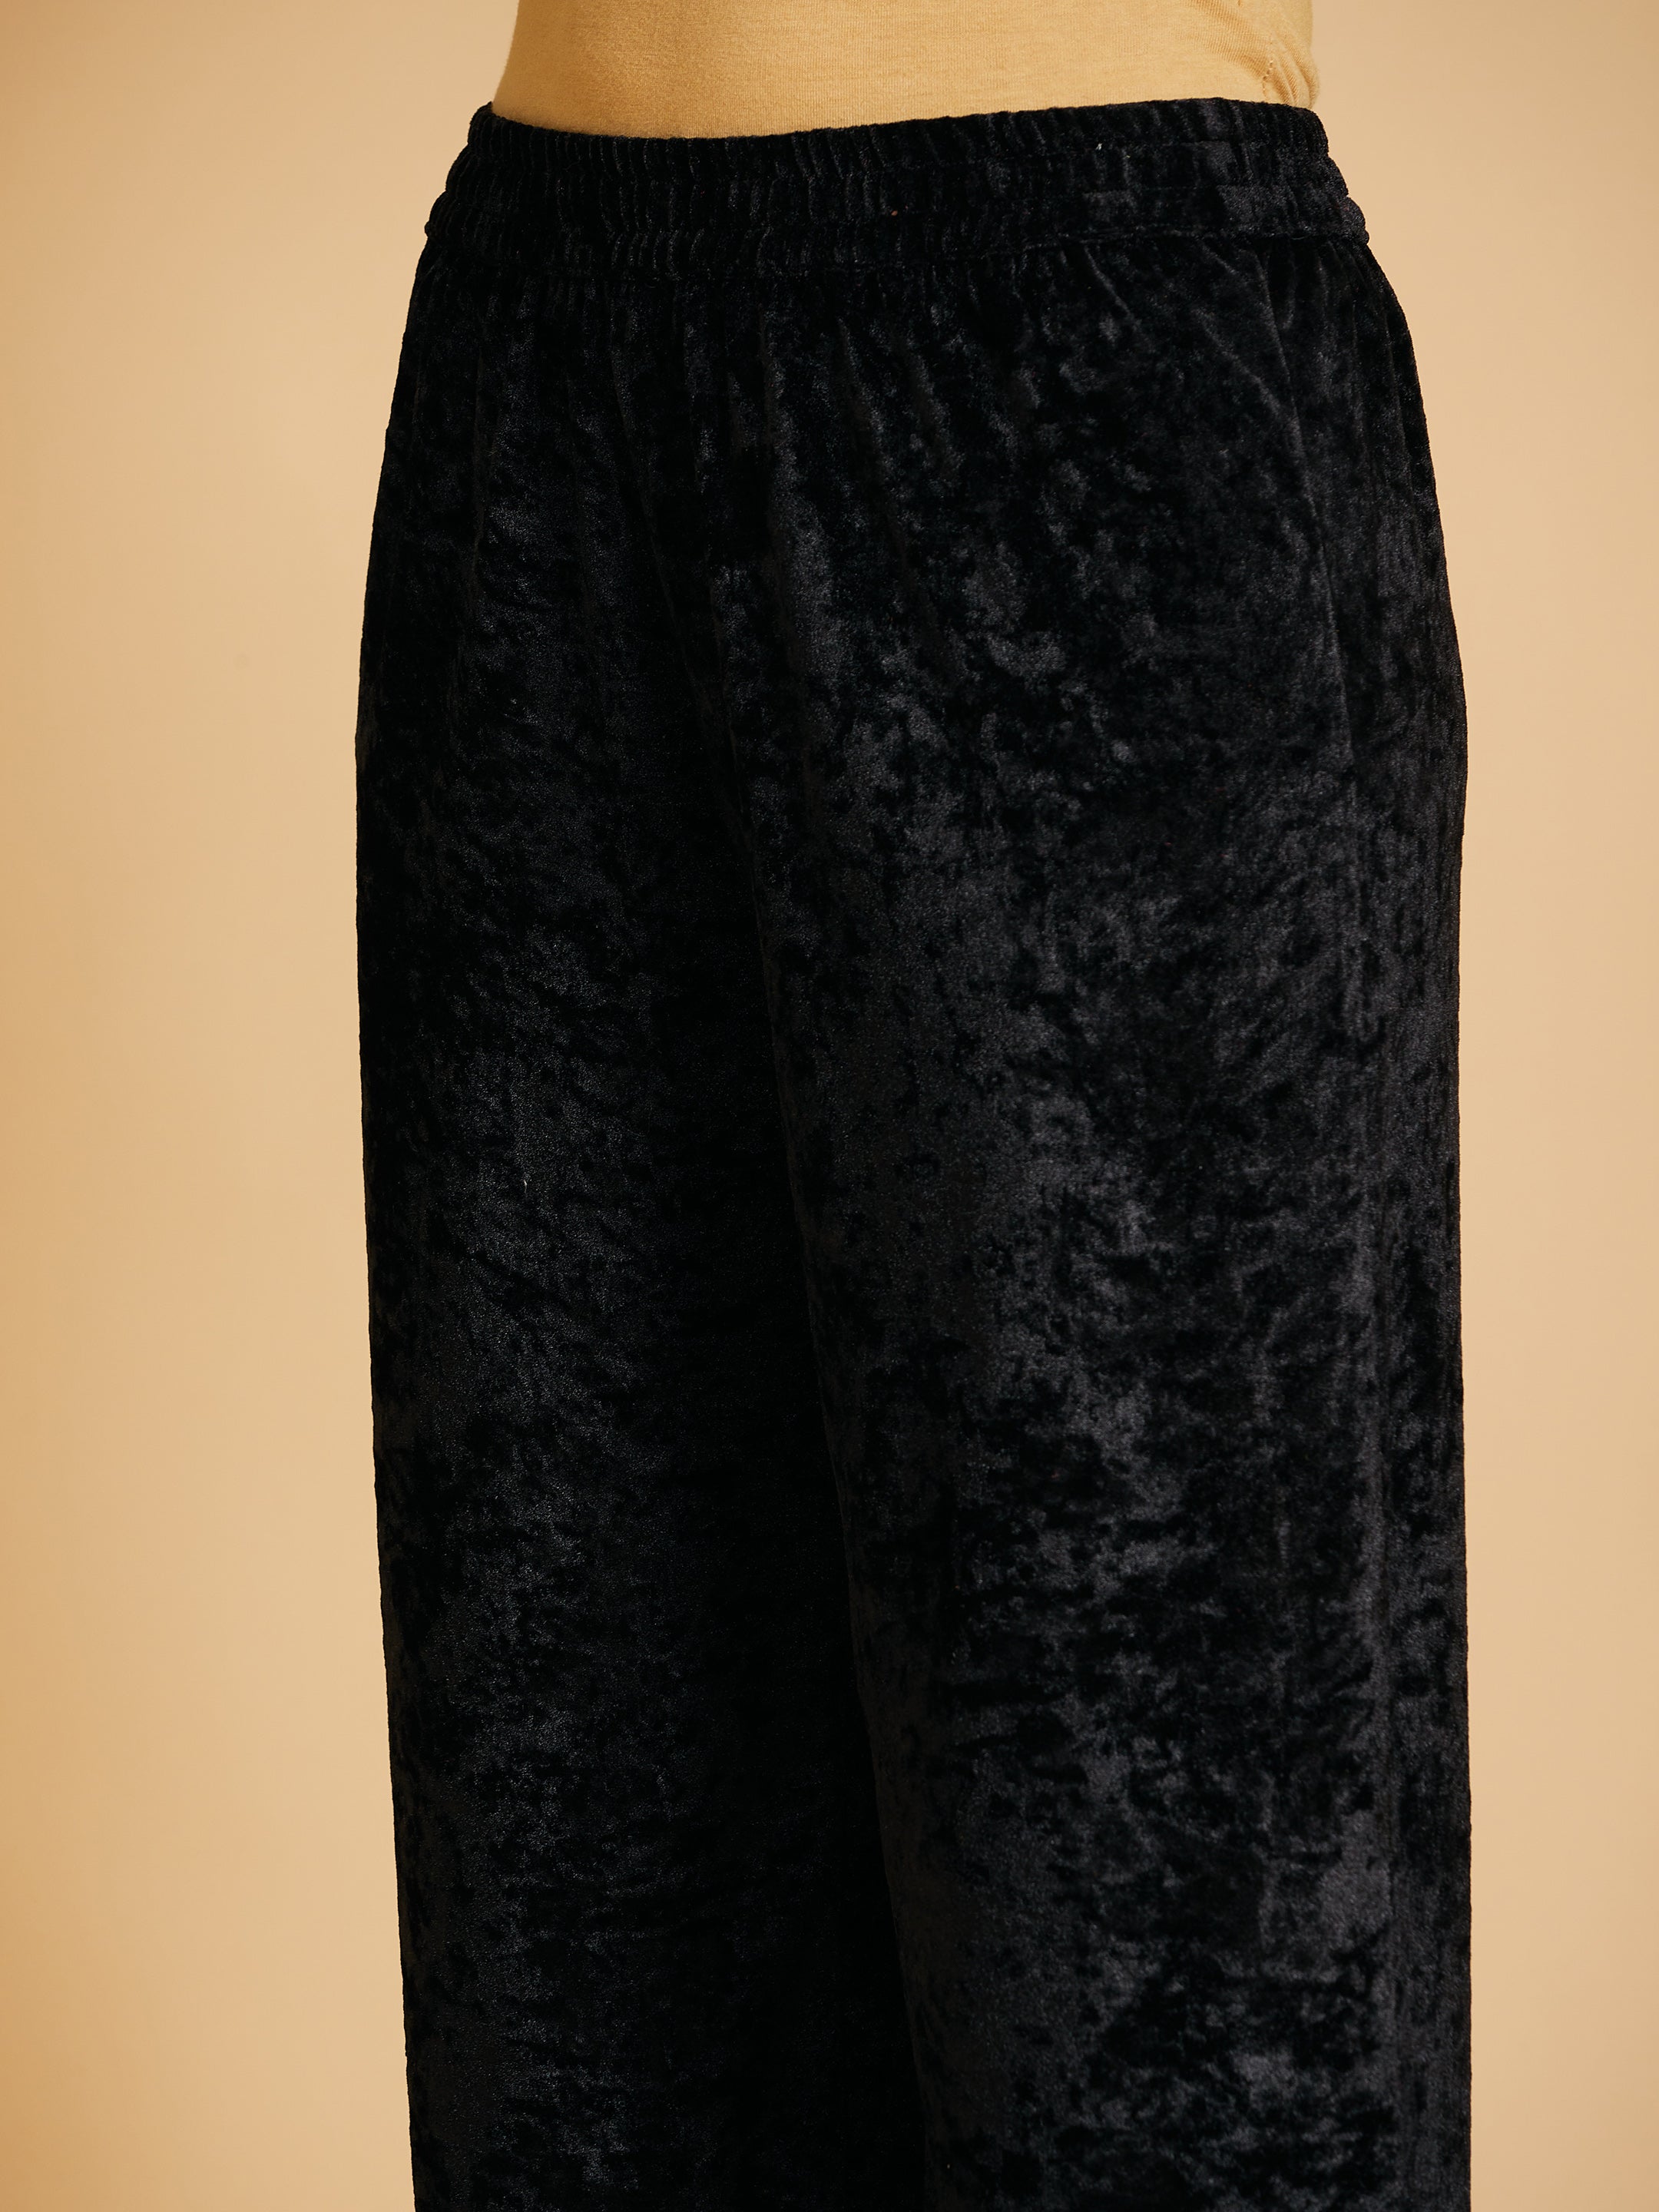 Women's Black Velvet Embroidered Dress With Pants - Lyush